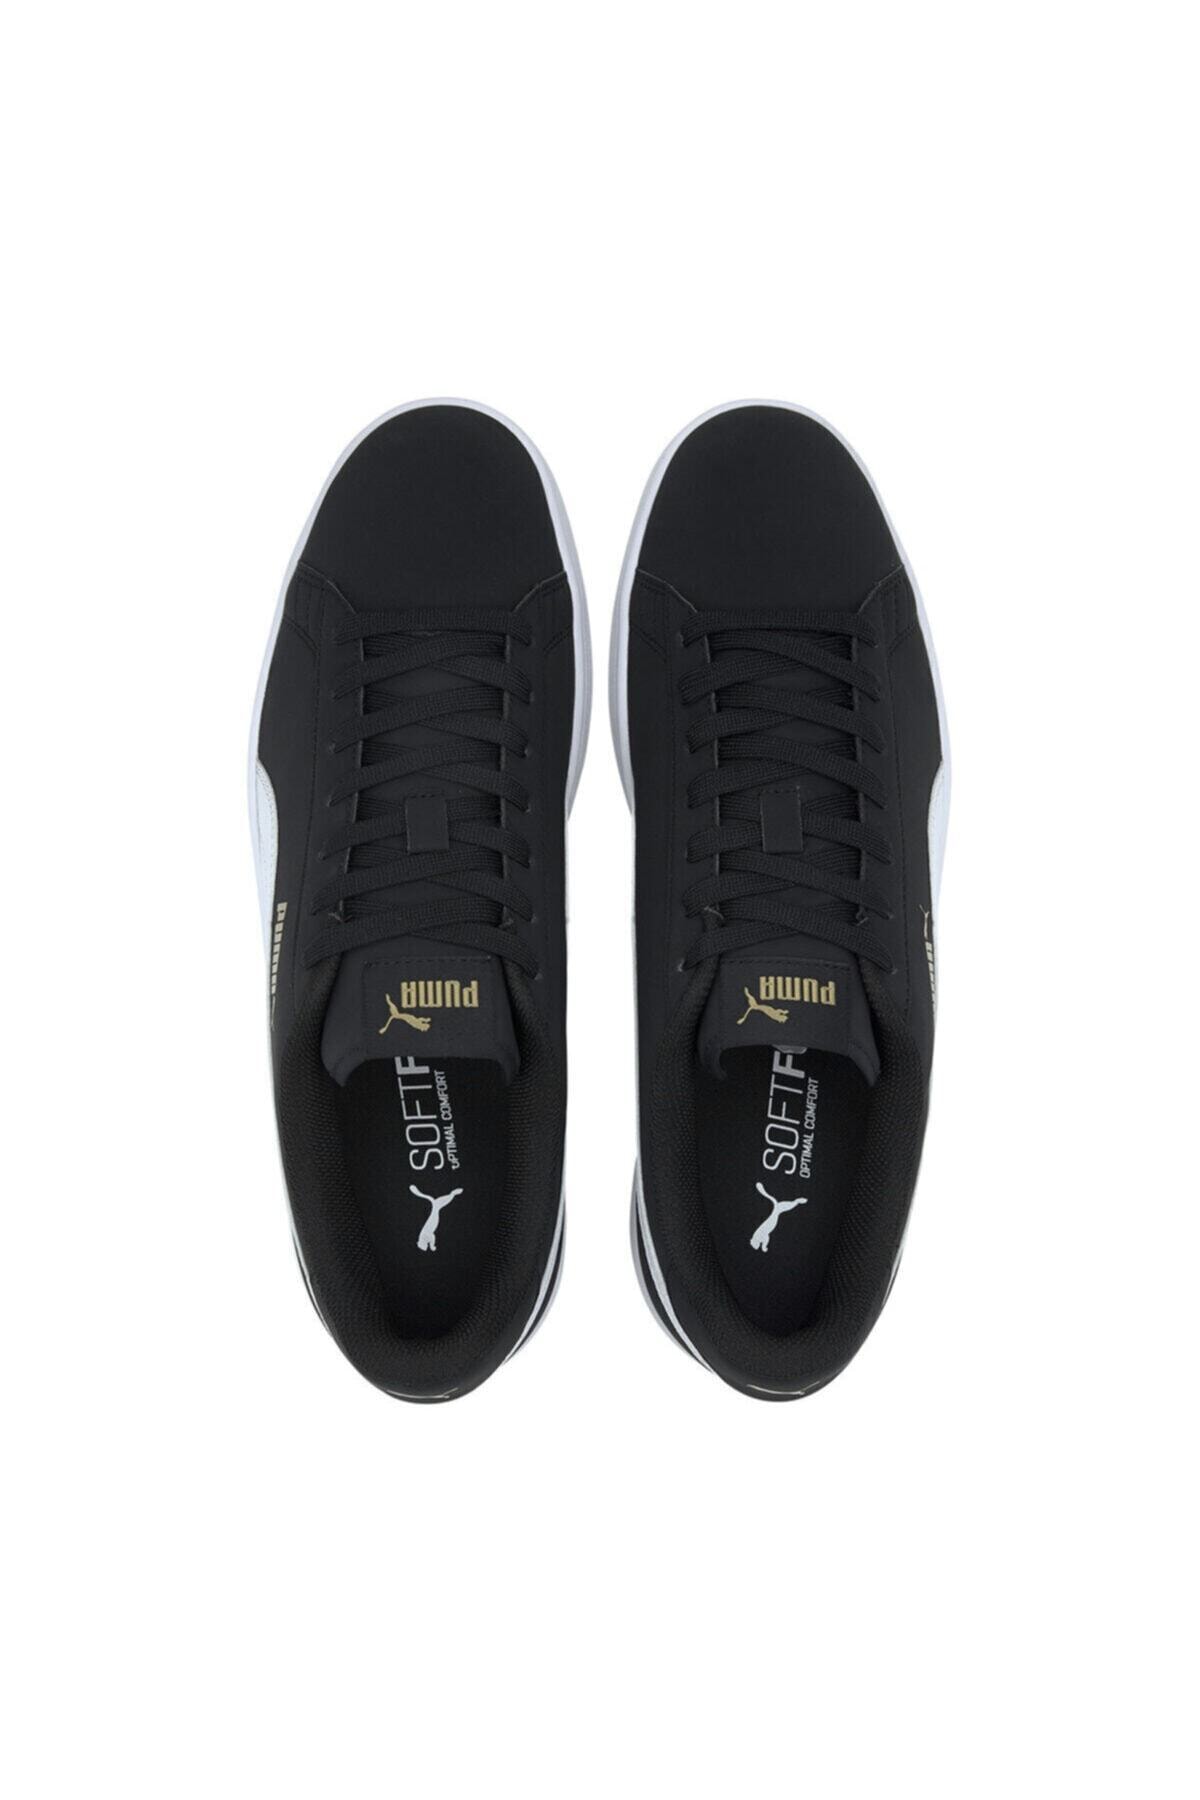 Smash Buck - Unisex Siyah Sneaker Spor Ayakkabı